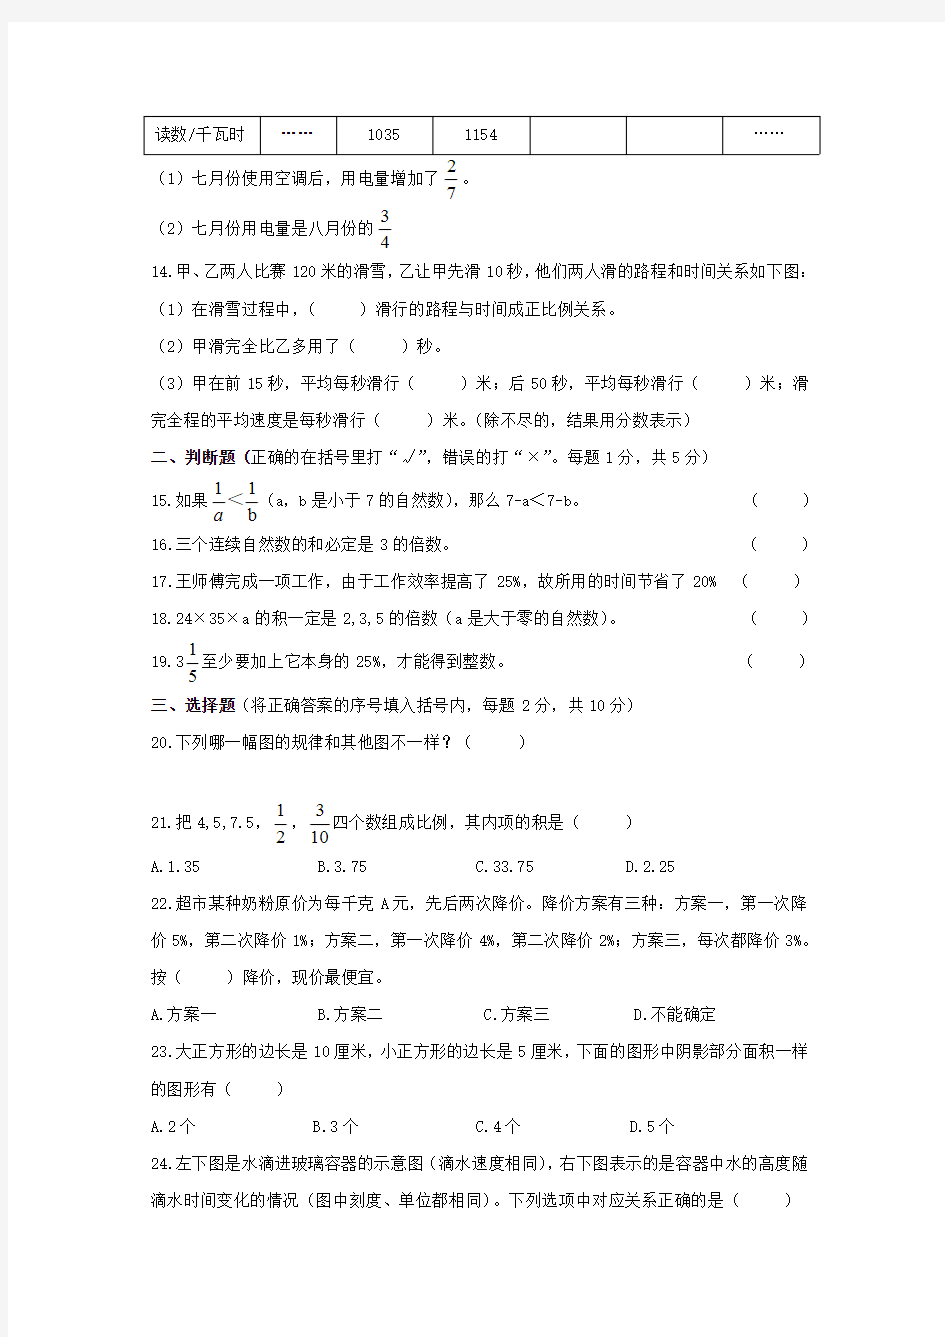 六年级下册数学试题-杭州市育才中学初一新生入学考试卷